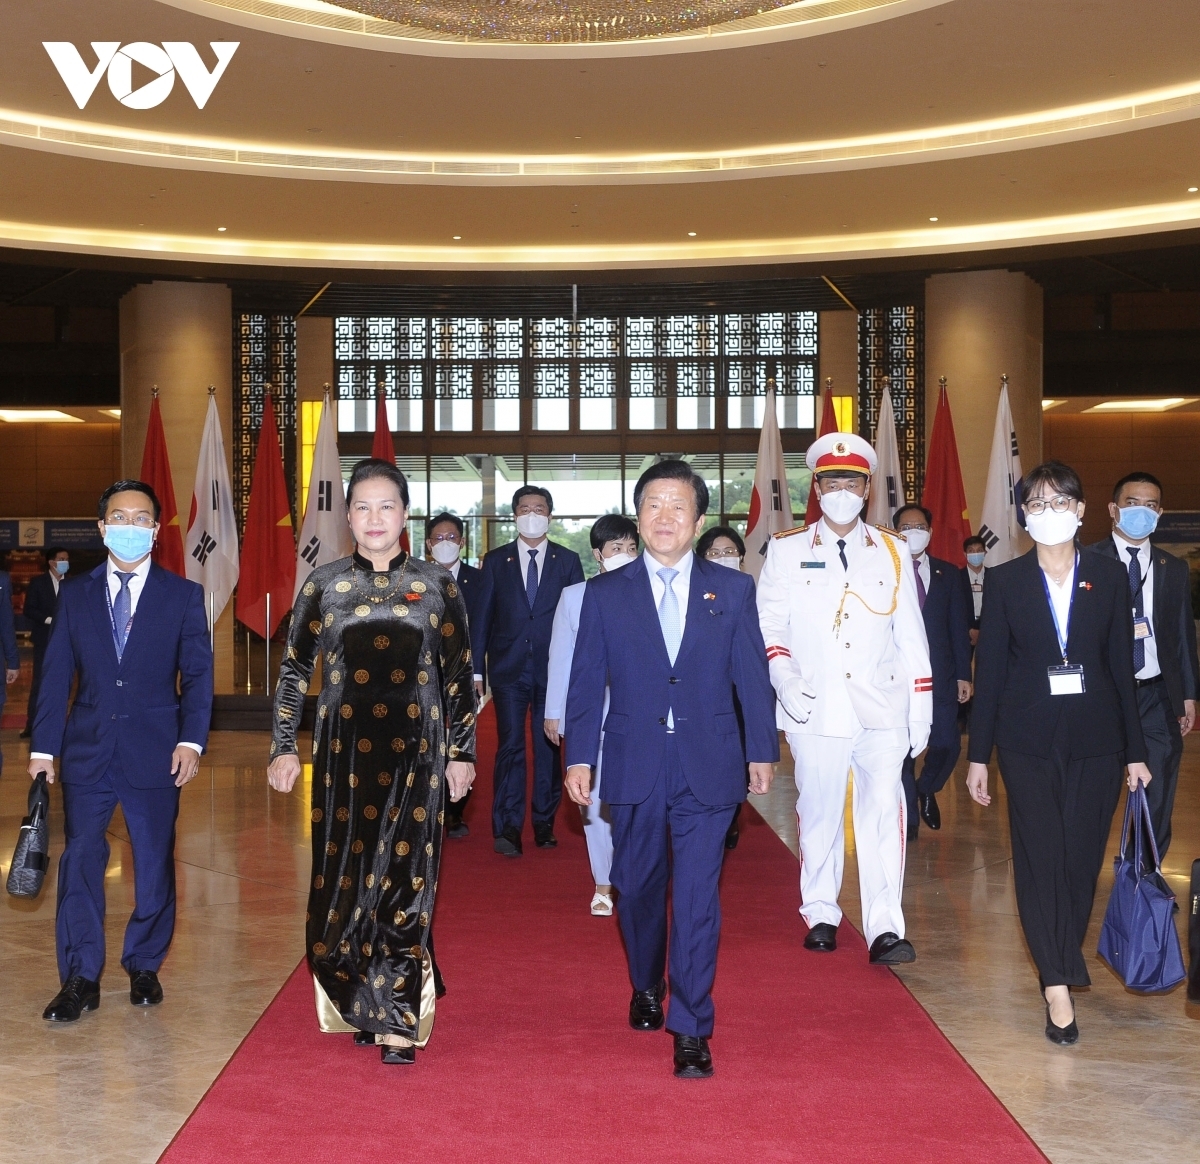 Nhận lời mời của Chủ tịch Quốc hội Nguyễn Thị Kim Ngân, Chủ tịch Quốc hội Hàn Quốc Park Byeong-Seug và Phu nhân cùng Đoàn đại biểu cấp cao Quốc hội Hàn Quốc thăm chính thức Việt Nam từ ngày 31/10 - 4/11.